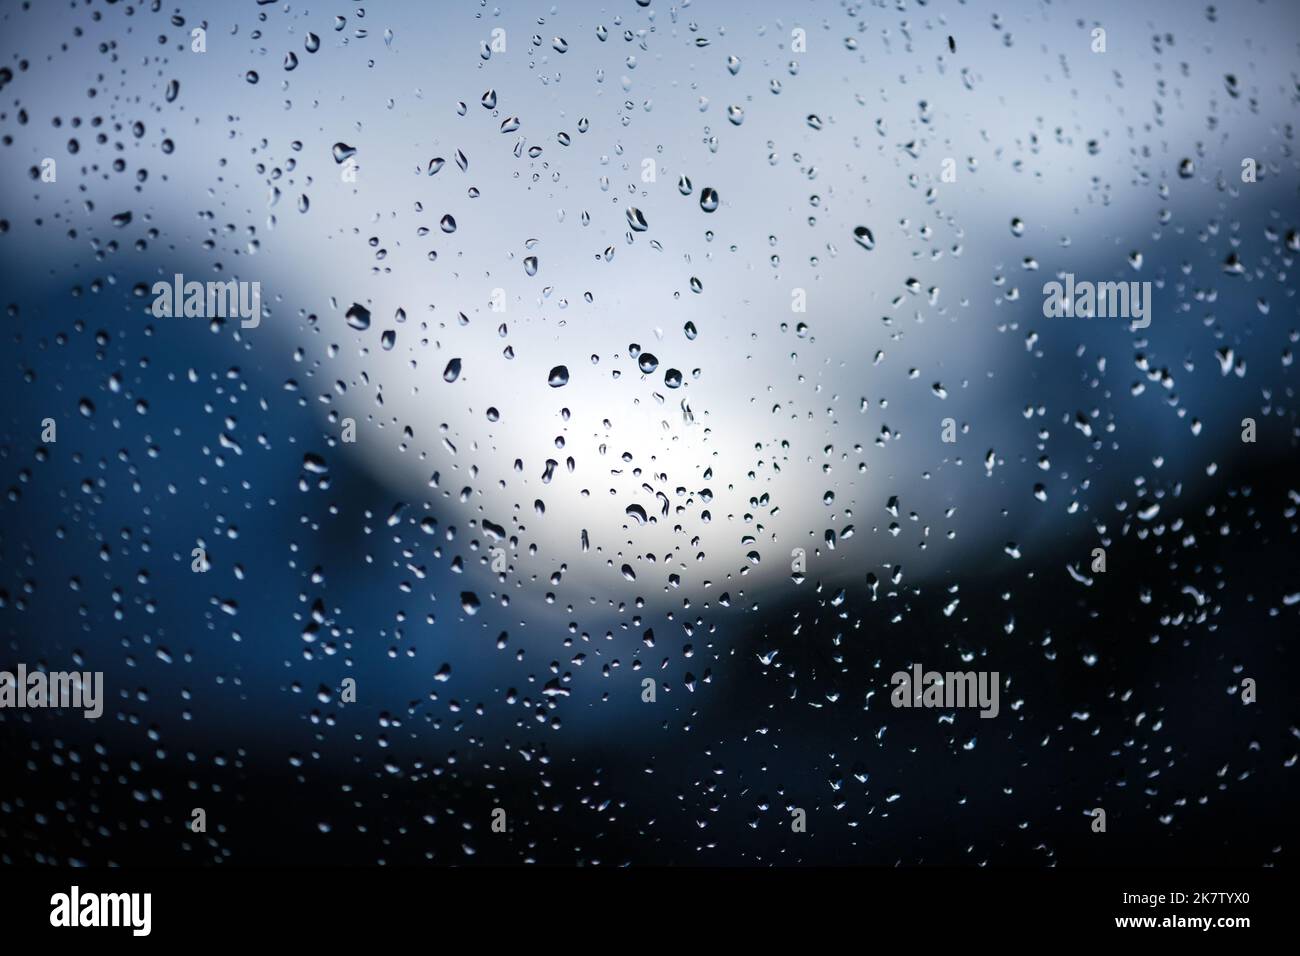 Gouttes de pluie sur le verre de la fenêtre sur fond bleu. Mise au point sélective. Toile de fond de la ville pluvieuse Banque D'Images